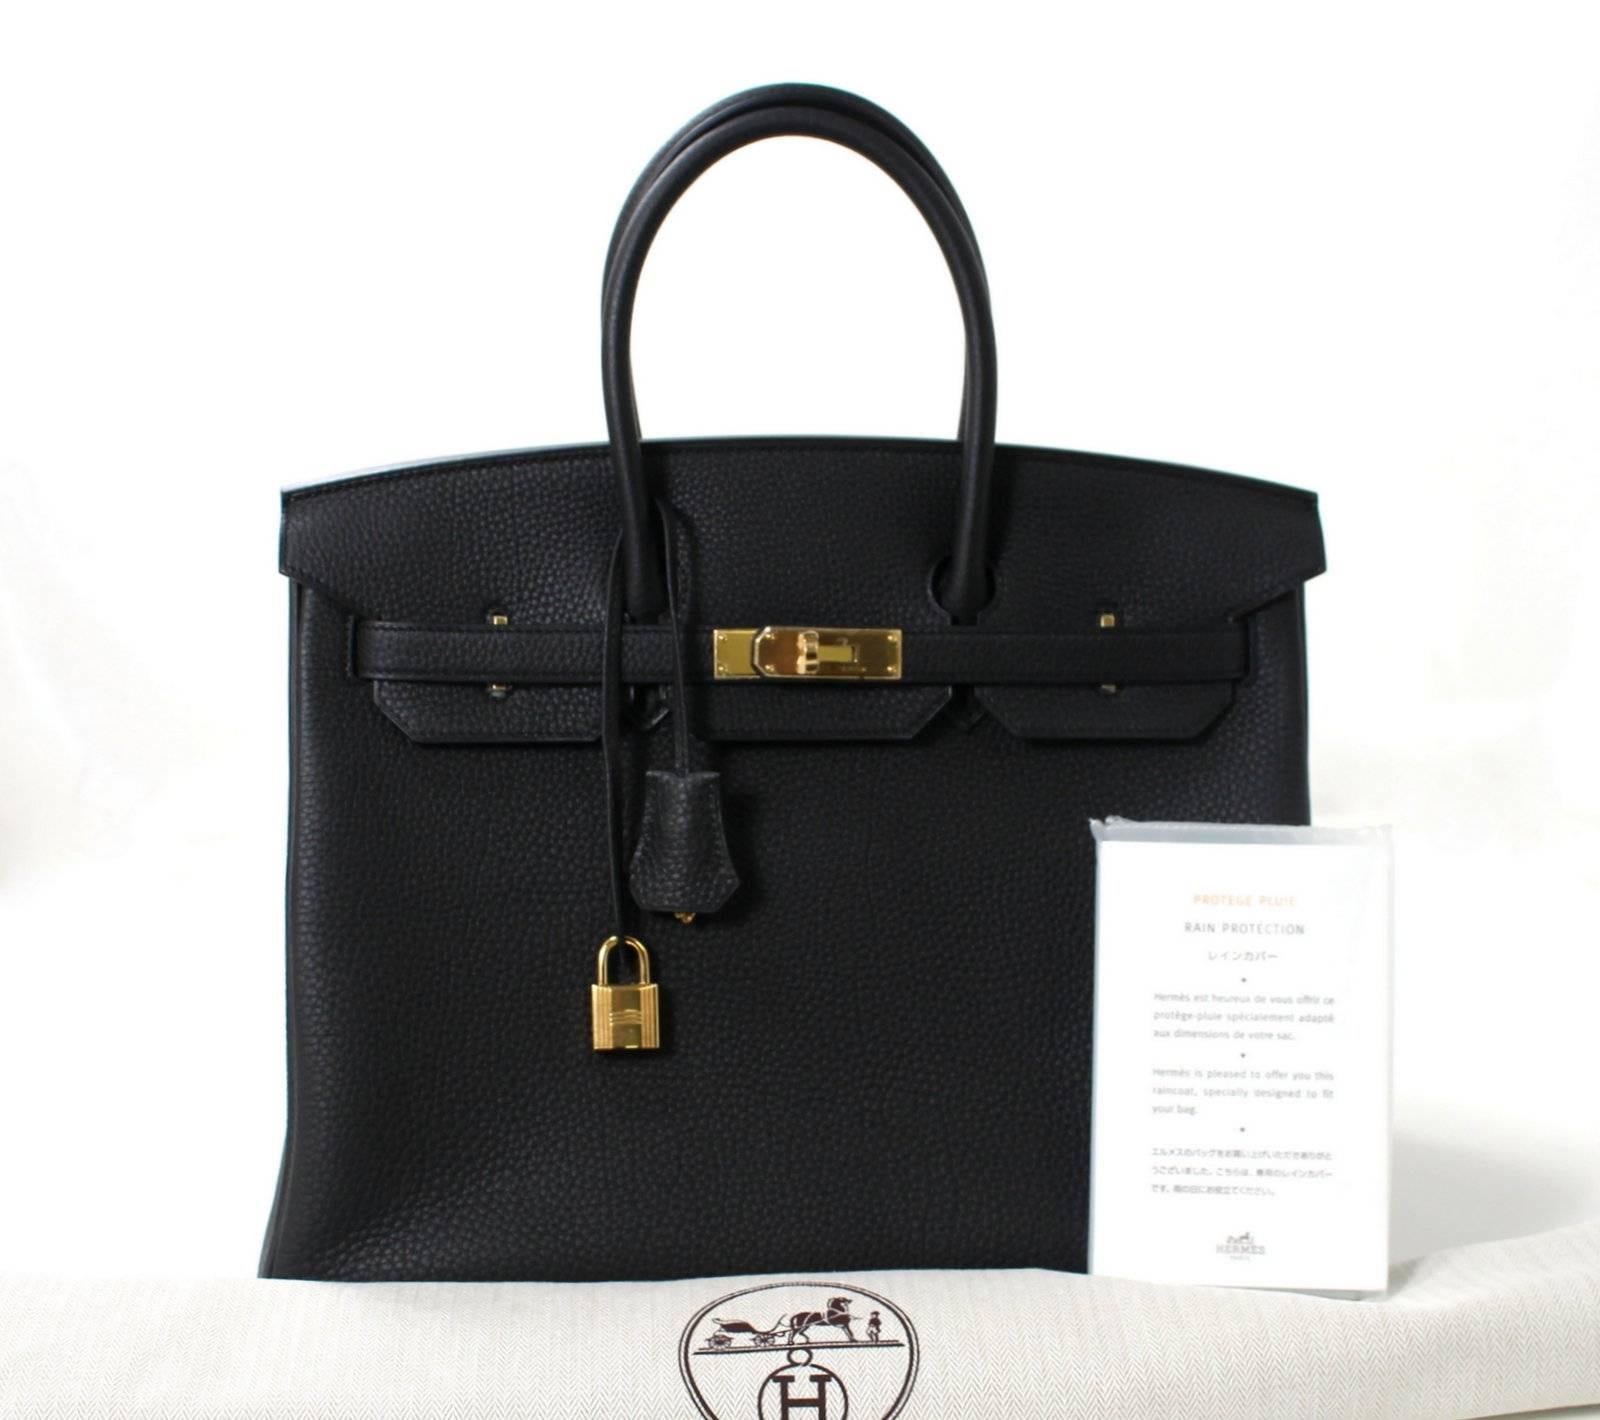 Hermes Black Birkin Bag- 35 cm, Togo Leather with Gold Hardware 6